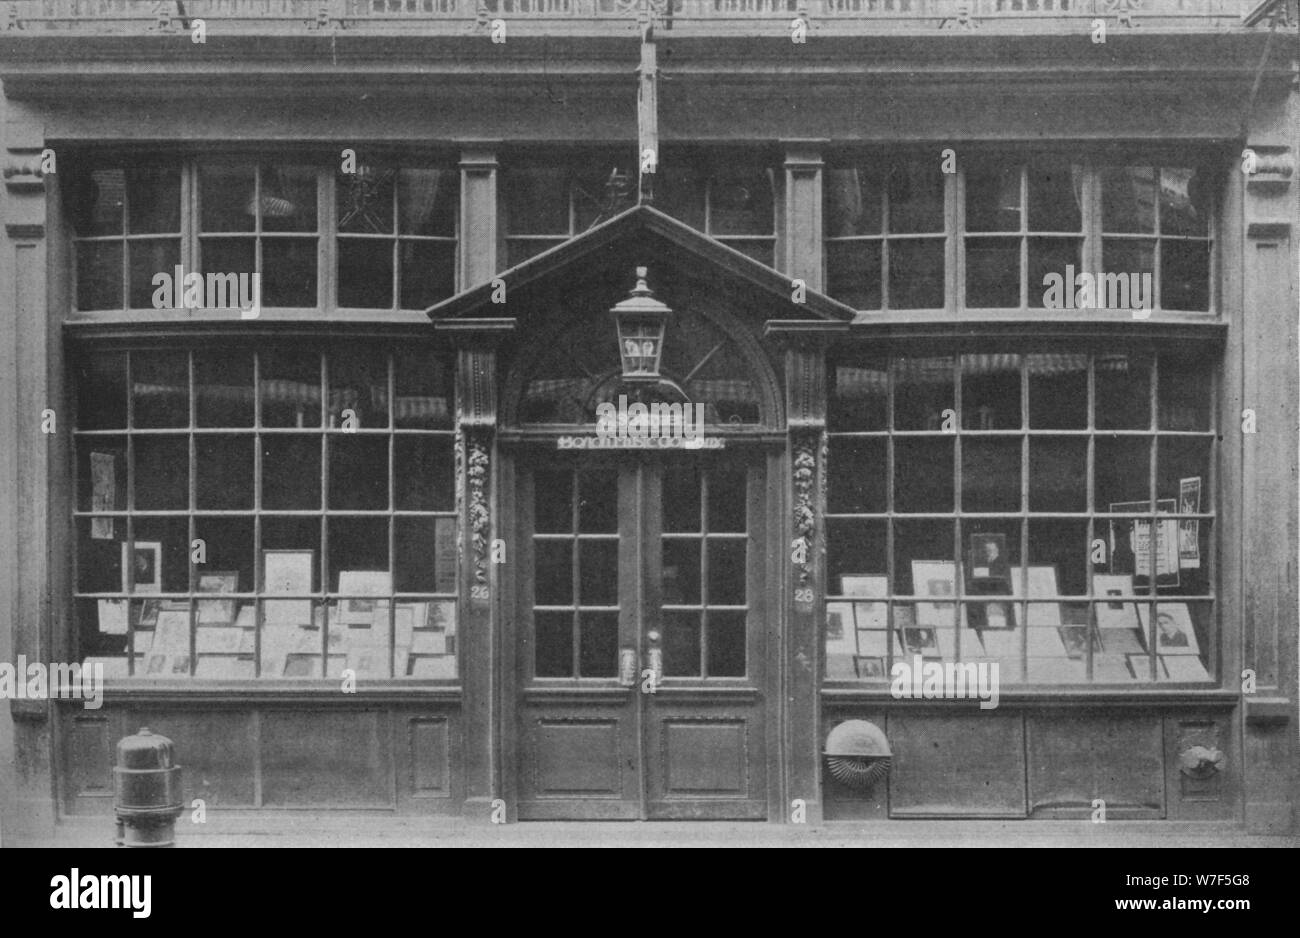 Shop front on West Street, Boston, Massachusetts, 1925. Artist: Unknown. Stock Photo